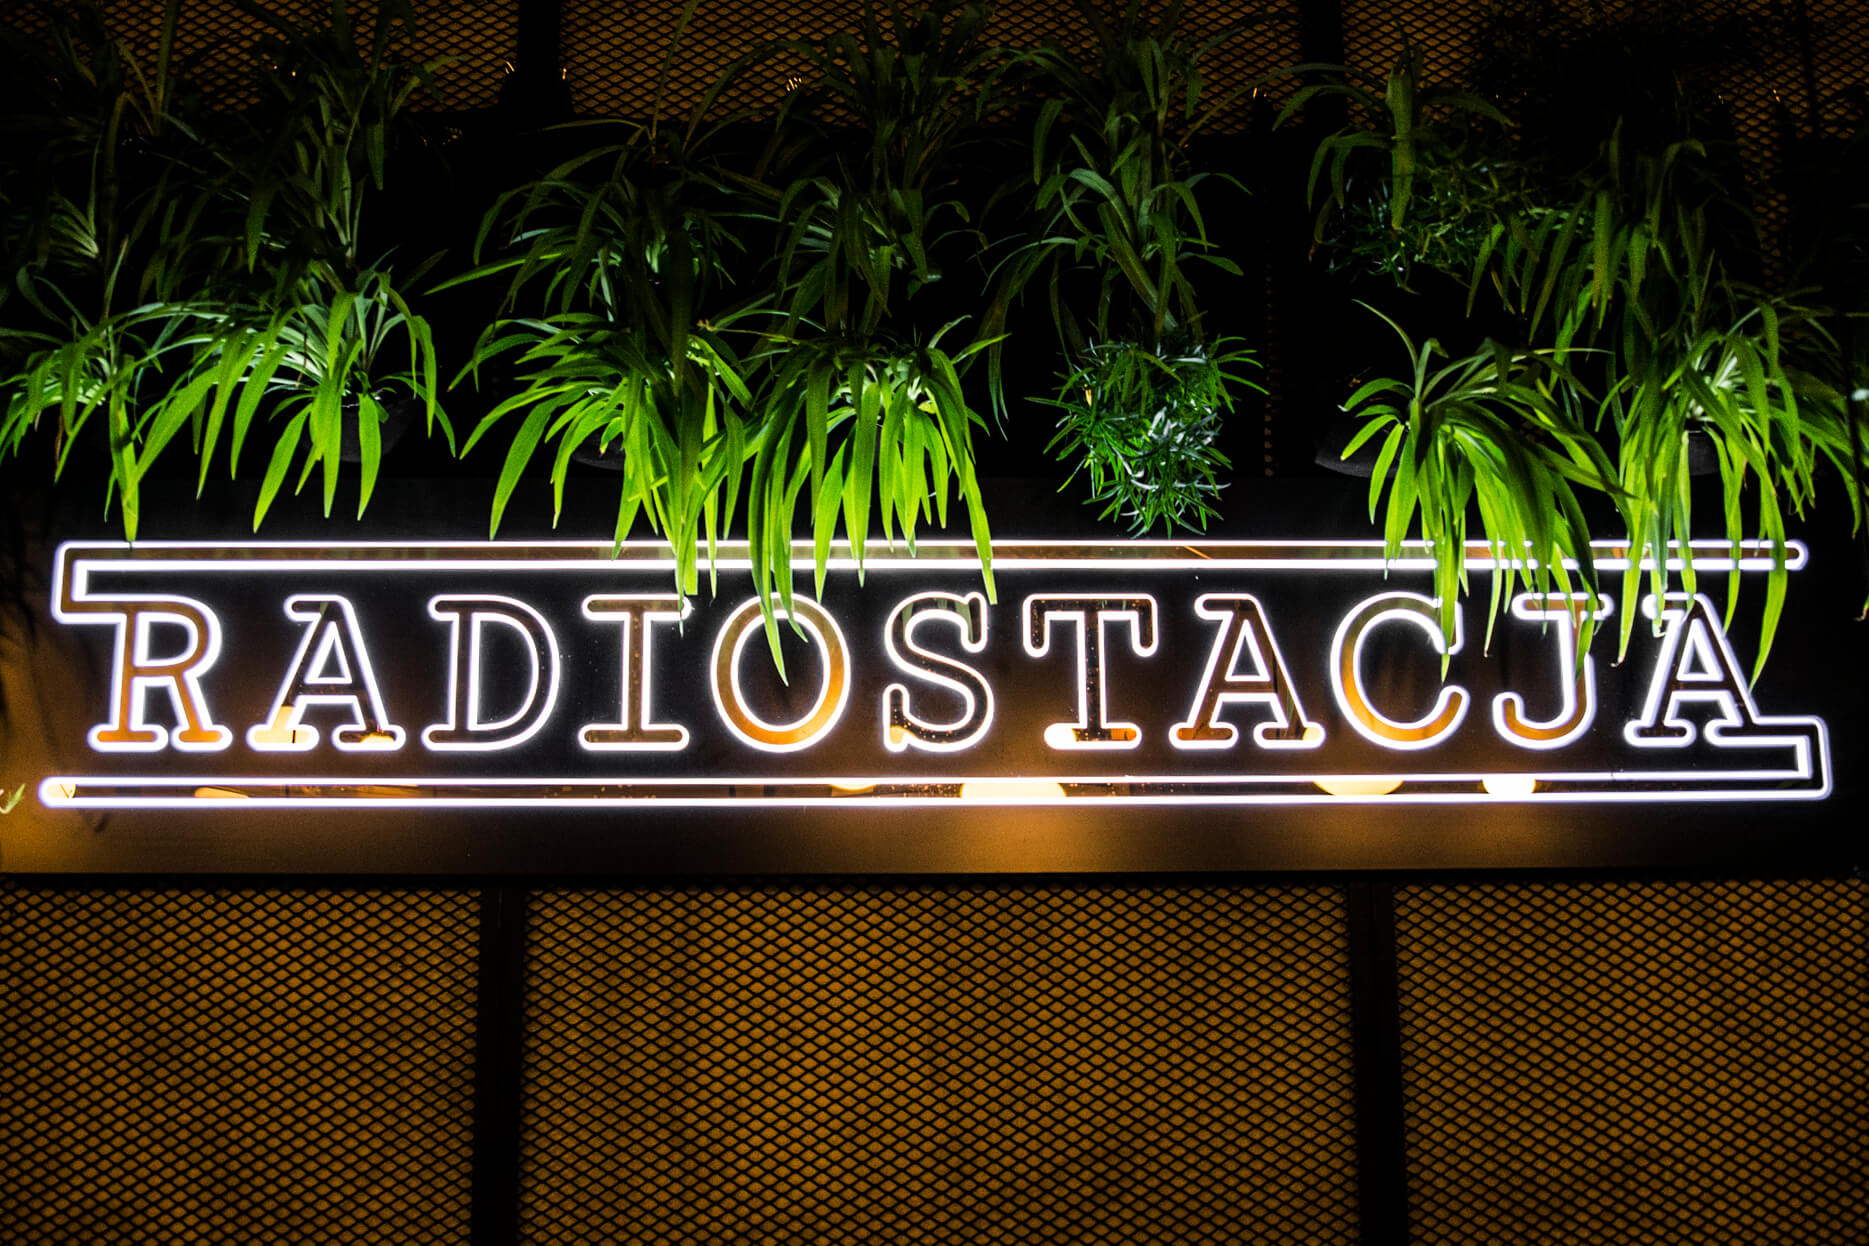 Radiostation - Radiosender - Leuchttafel im Inneren des Restaurants